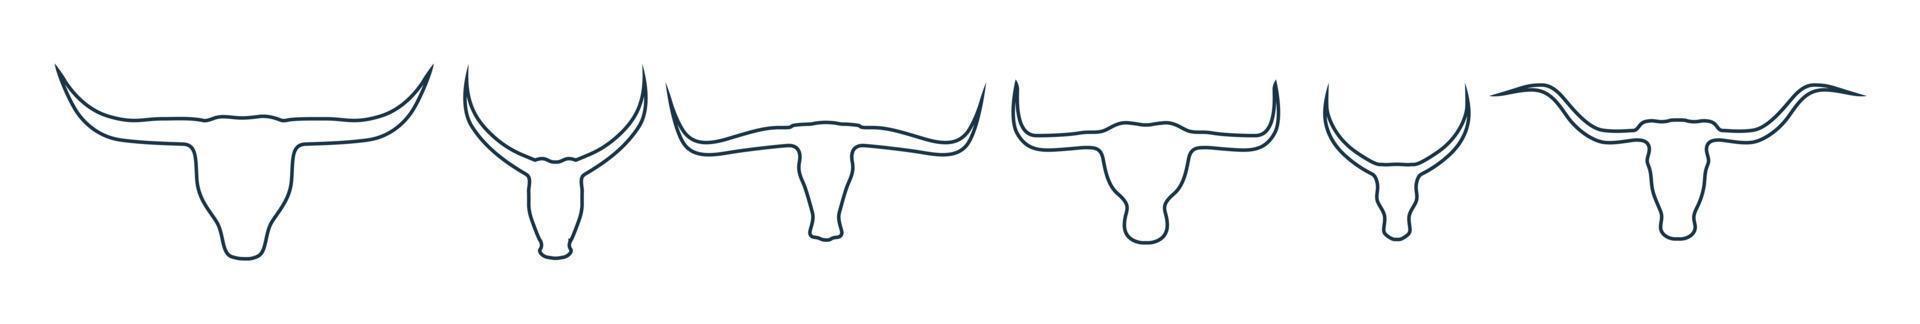 Stier- und Kuhkopf Strichzeichnungen. Silhouette des Stier- und Kuhkopfes mit großem Hornvektor vektor